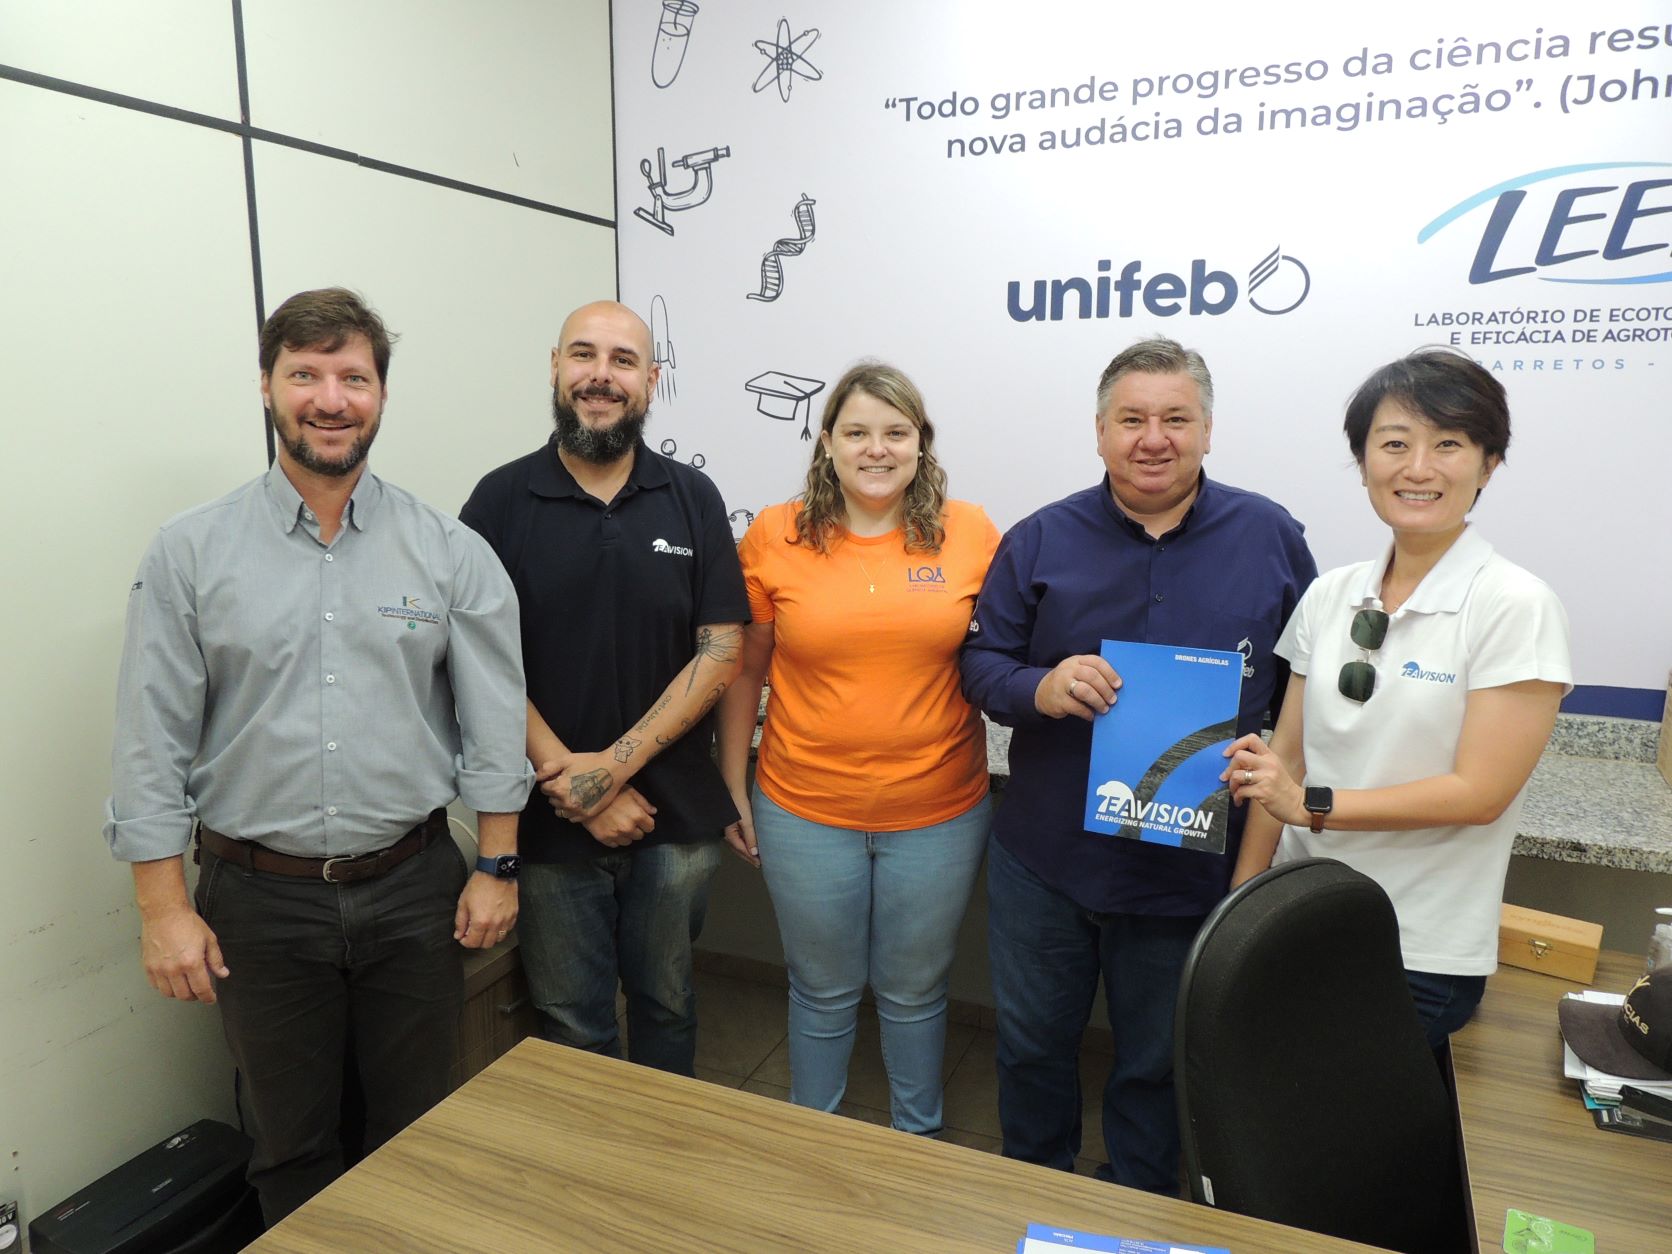 Laboratório de Ecotoxicologia e Eficácia dos Agrotóxicos do UNIFEB promove parceria com Eavision e Kip Iternational para avaliação da aplicação agrícola com drone